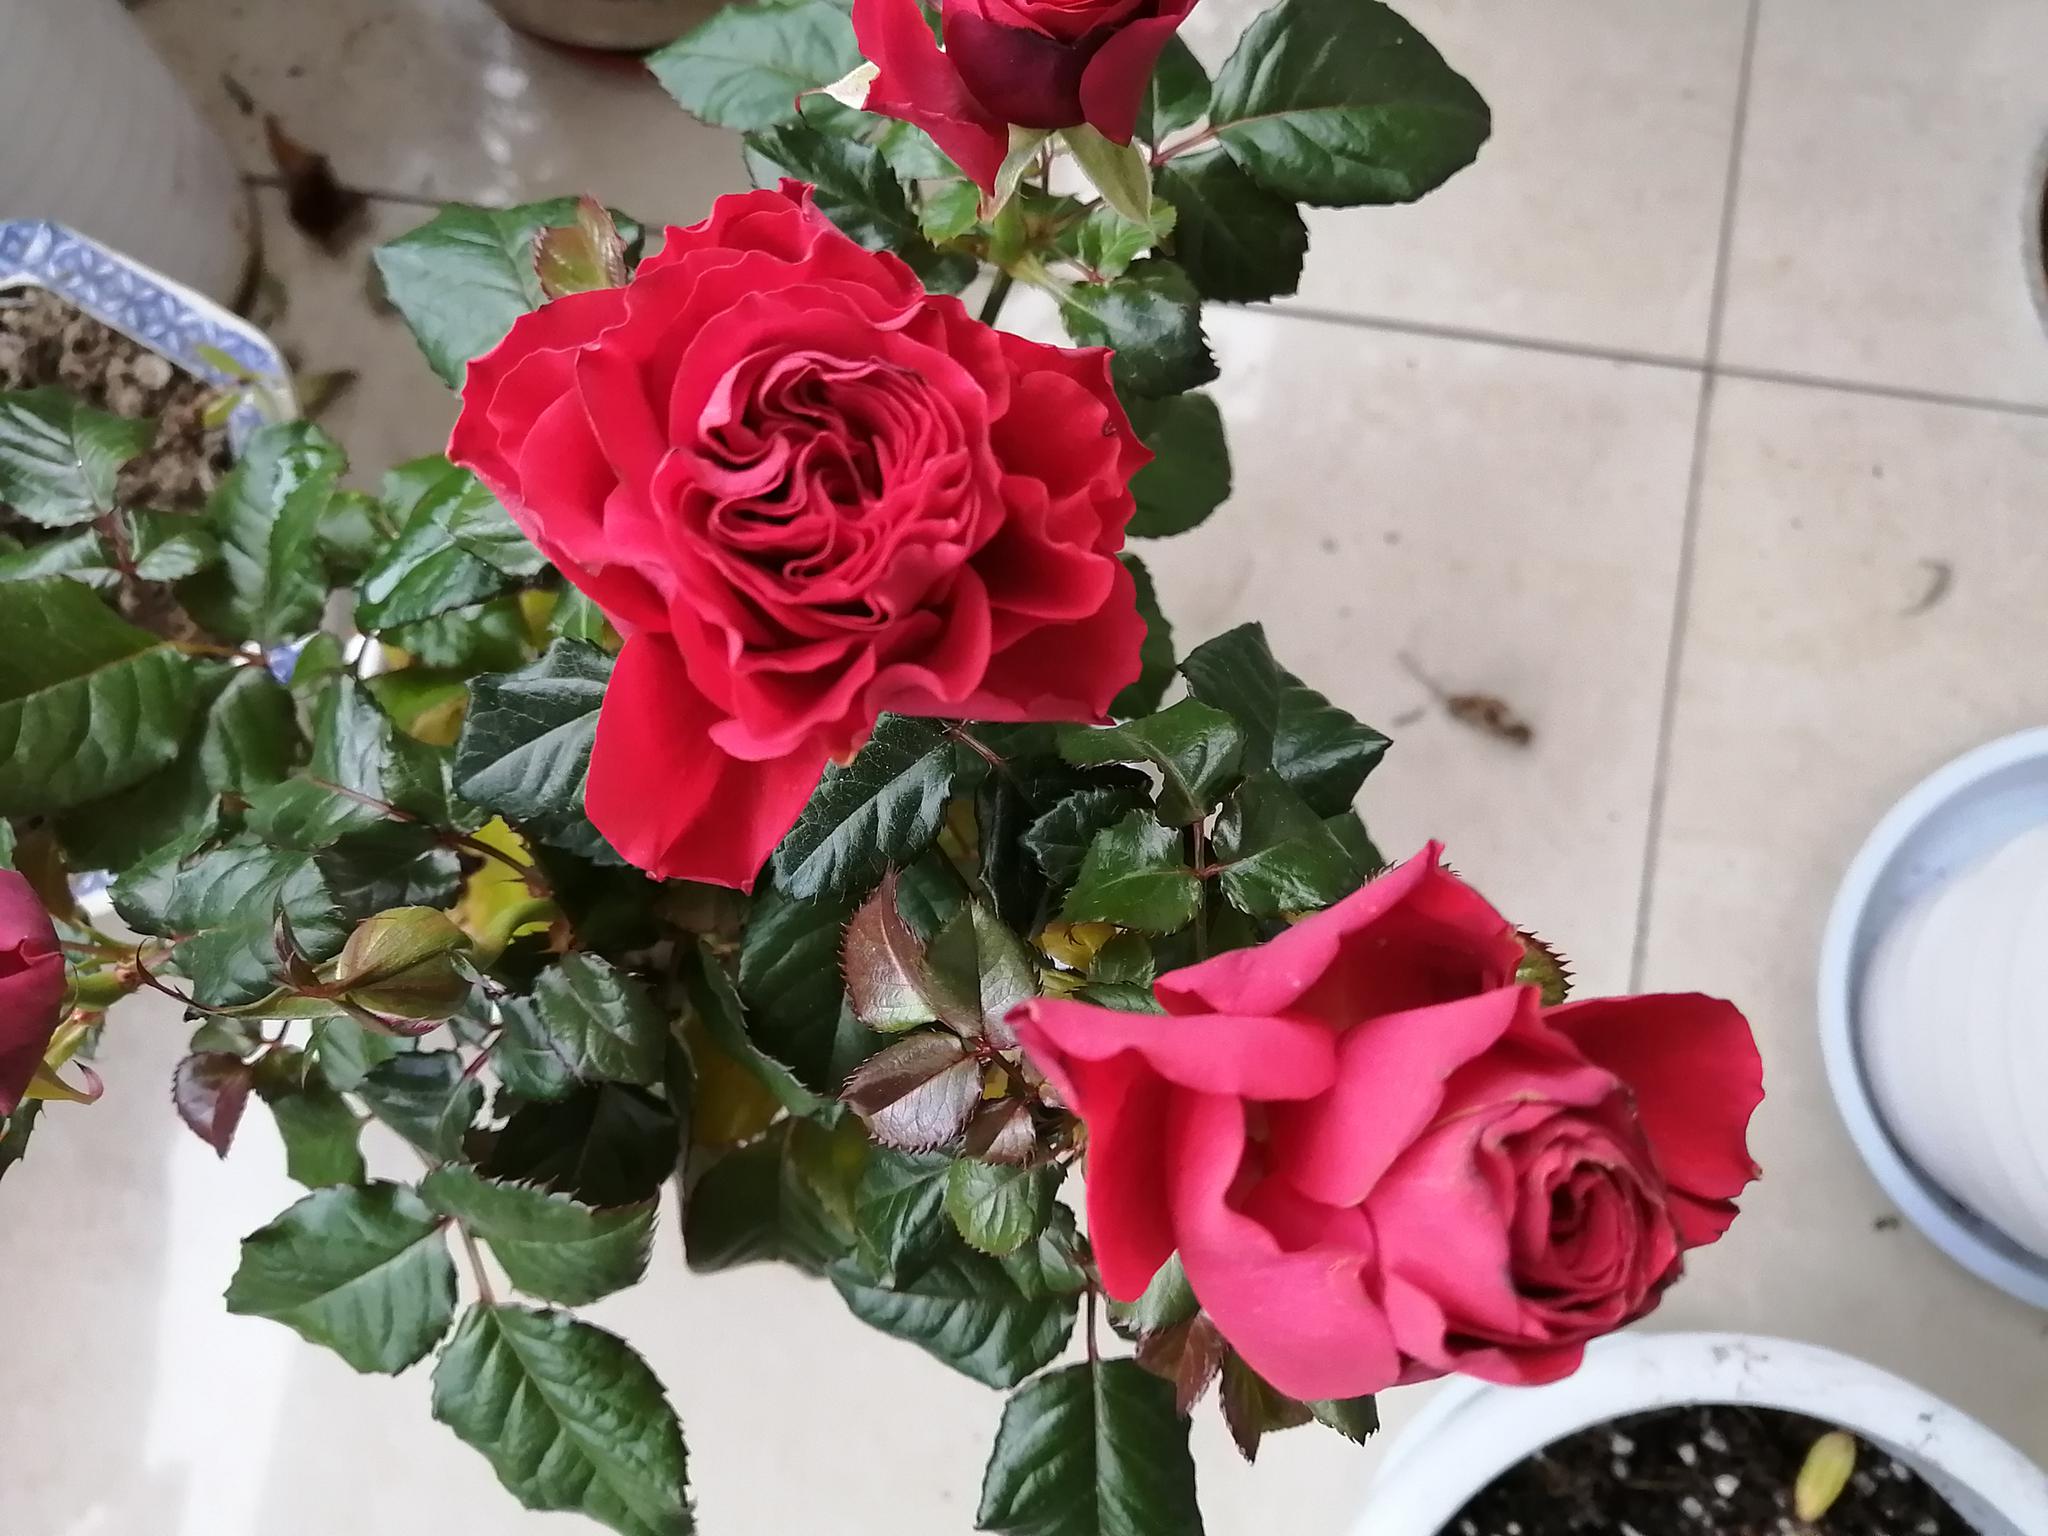 正月十三 清晨来阳台欣赏玫瑰花 盆栽玫瑰花儿自然绽放 高清图集 新浪网